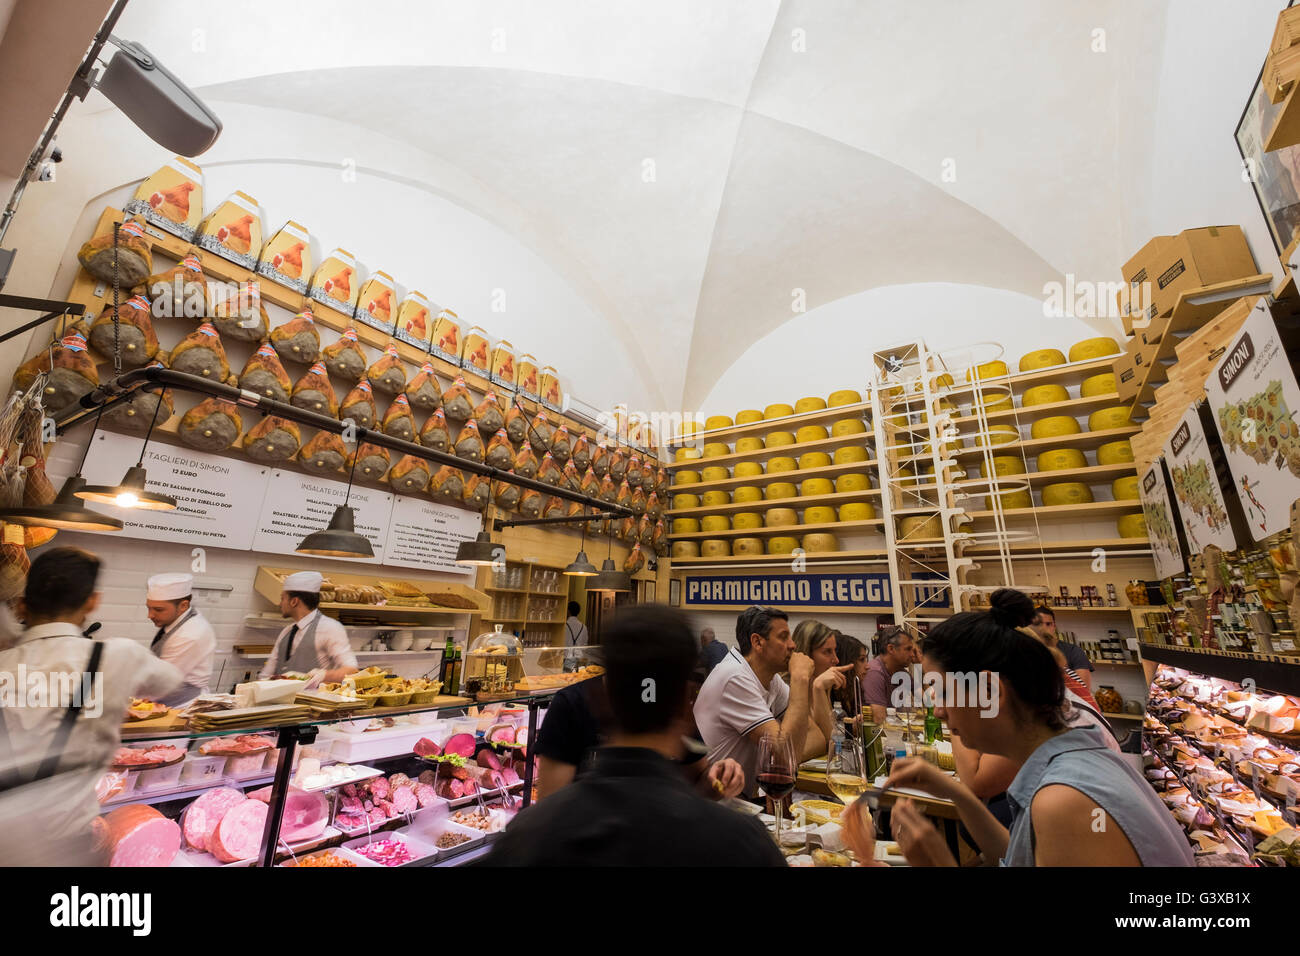 Riesige Parmasen Käse und Prosciutto-Schinken im Feinkostladen und Café Salumeria Simoni in über Draperie, Boligna, Italien Stockfoto